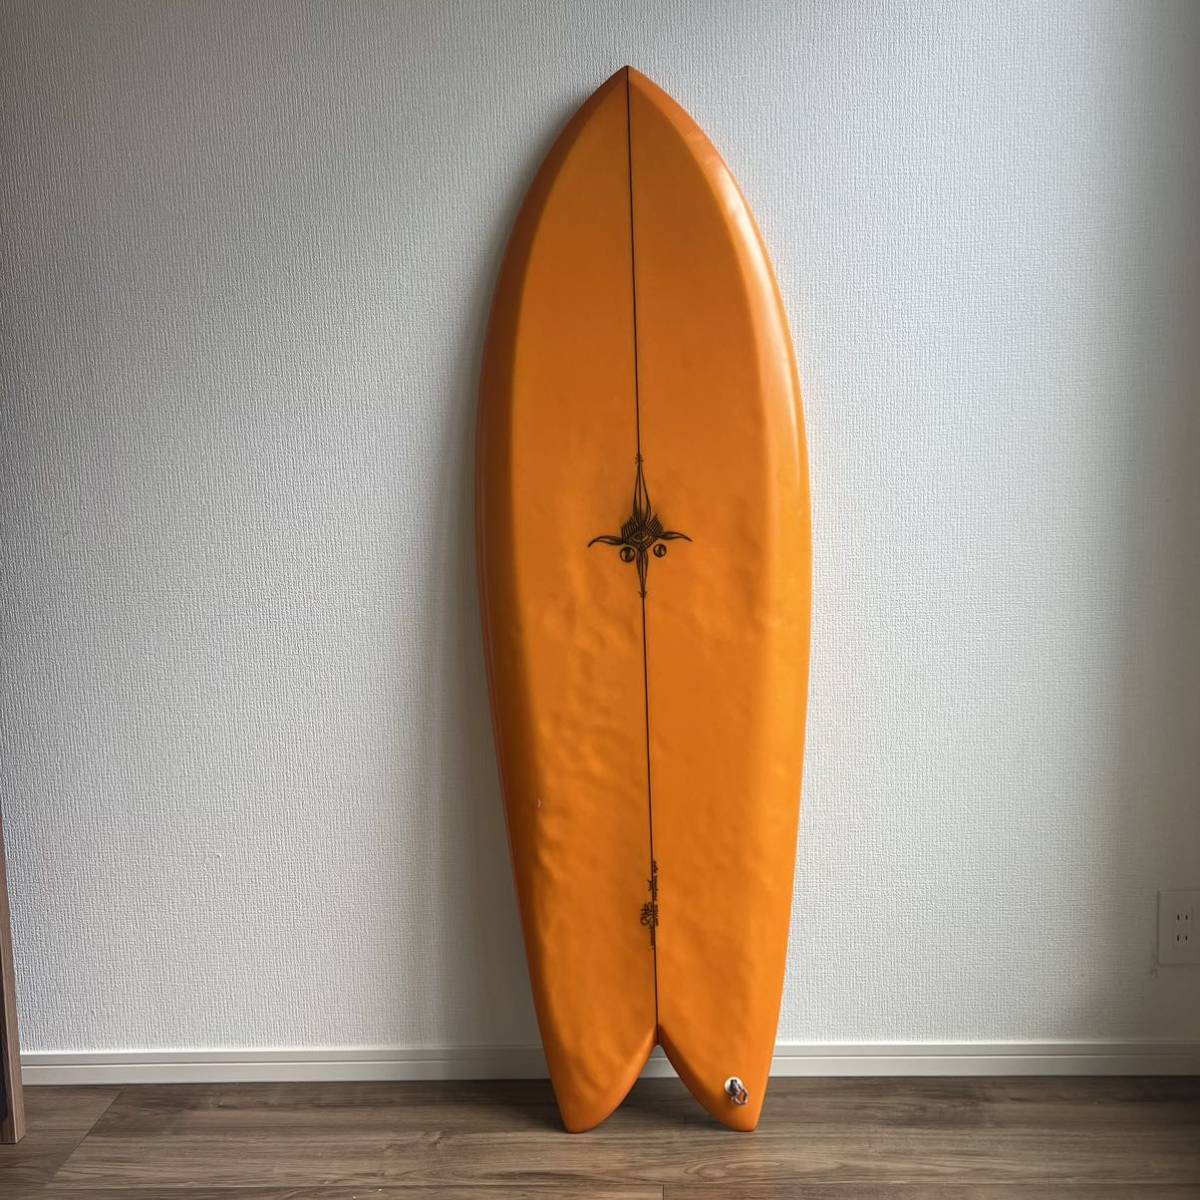 国産】 SQUIT FISH/Ryan 本人使用 Surfboards Burch 5.8フィート未満